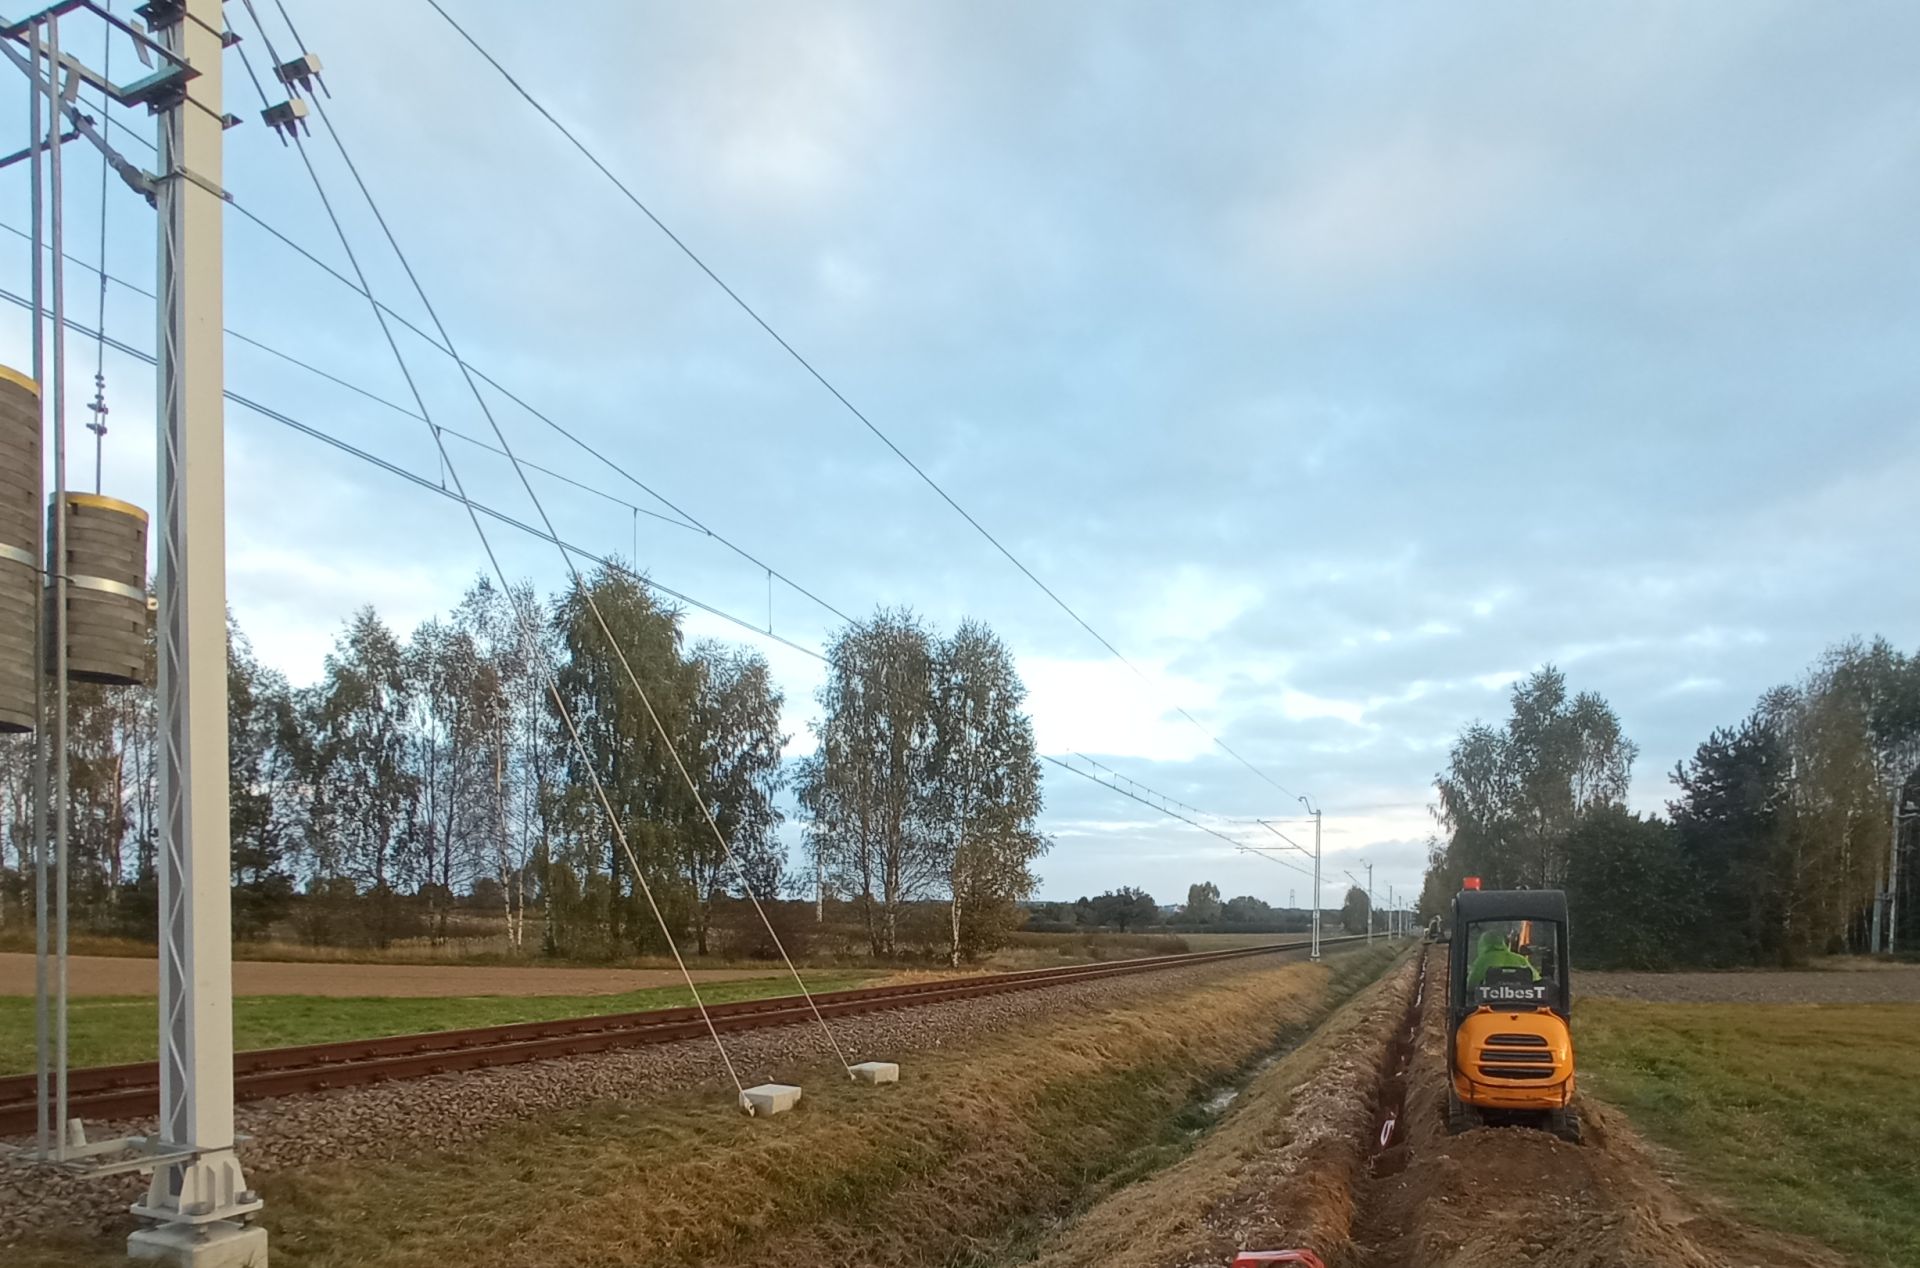 Budowa sieci światłowodowej wzdłuż torów kolejowych